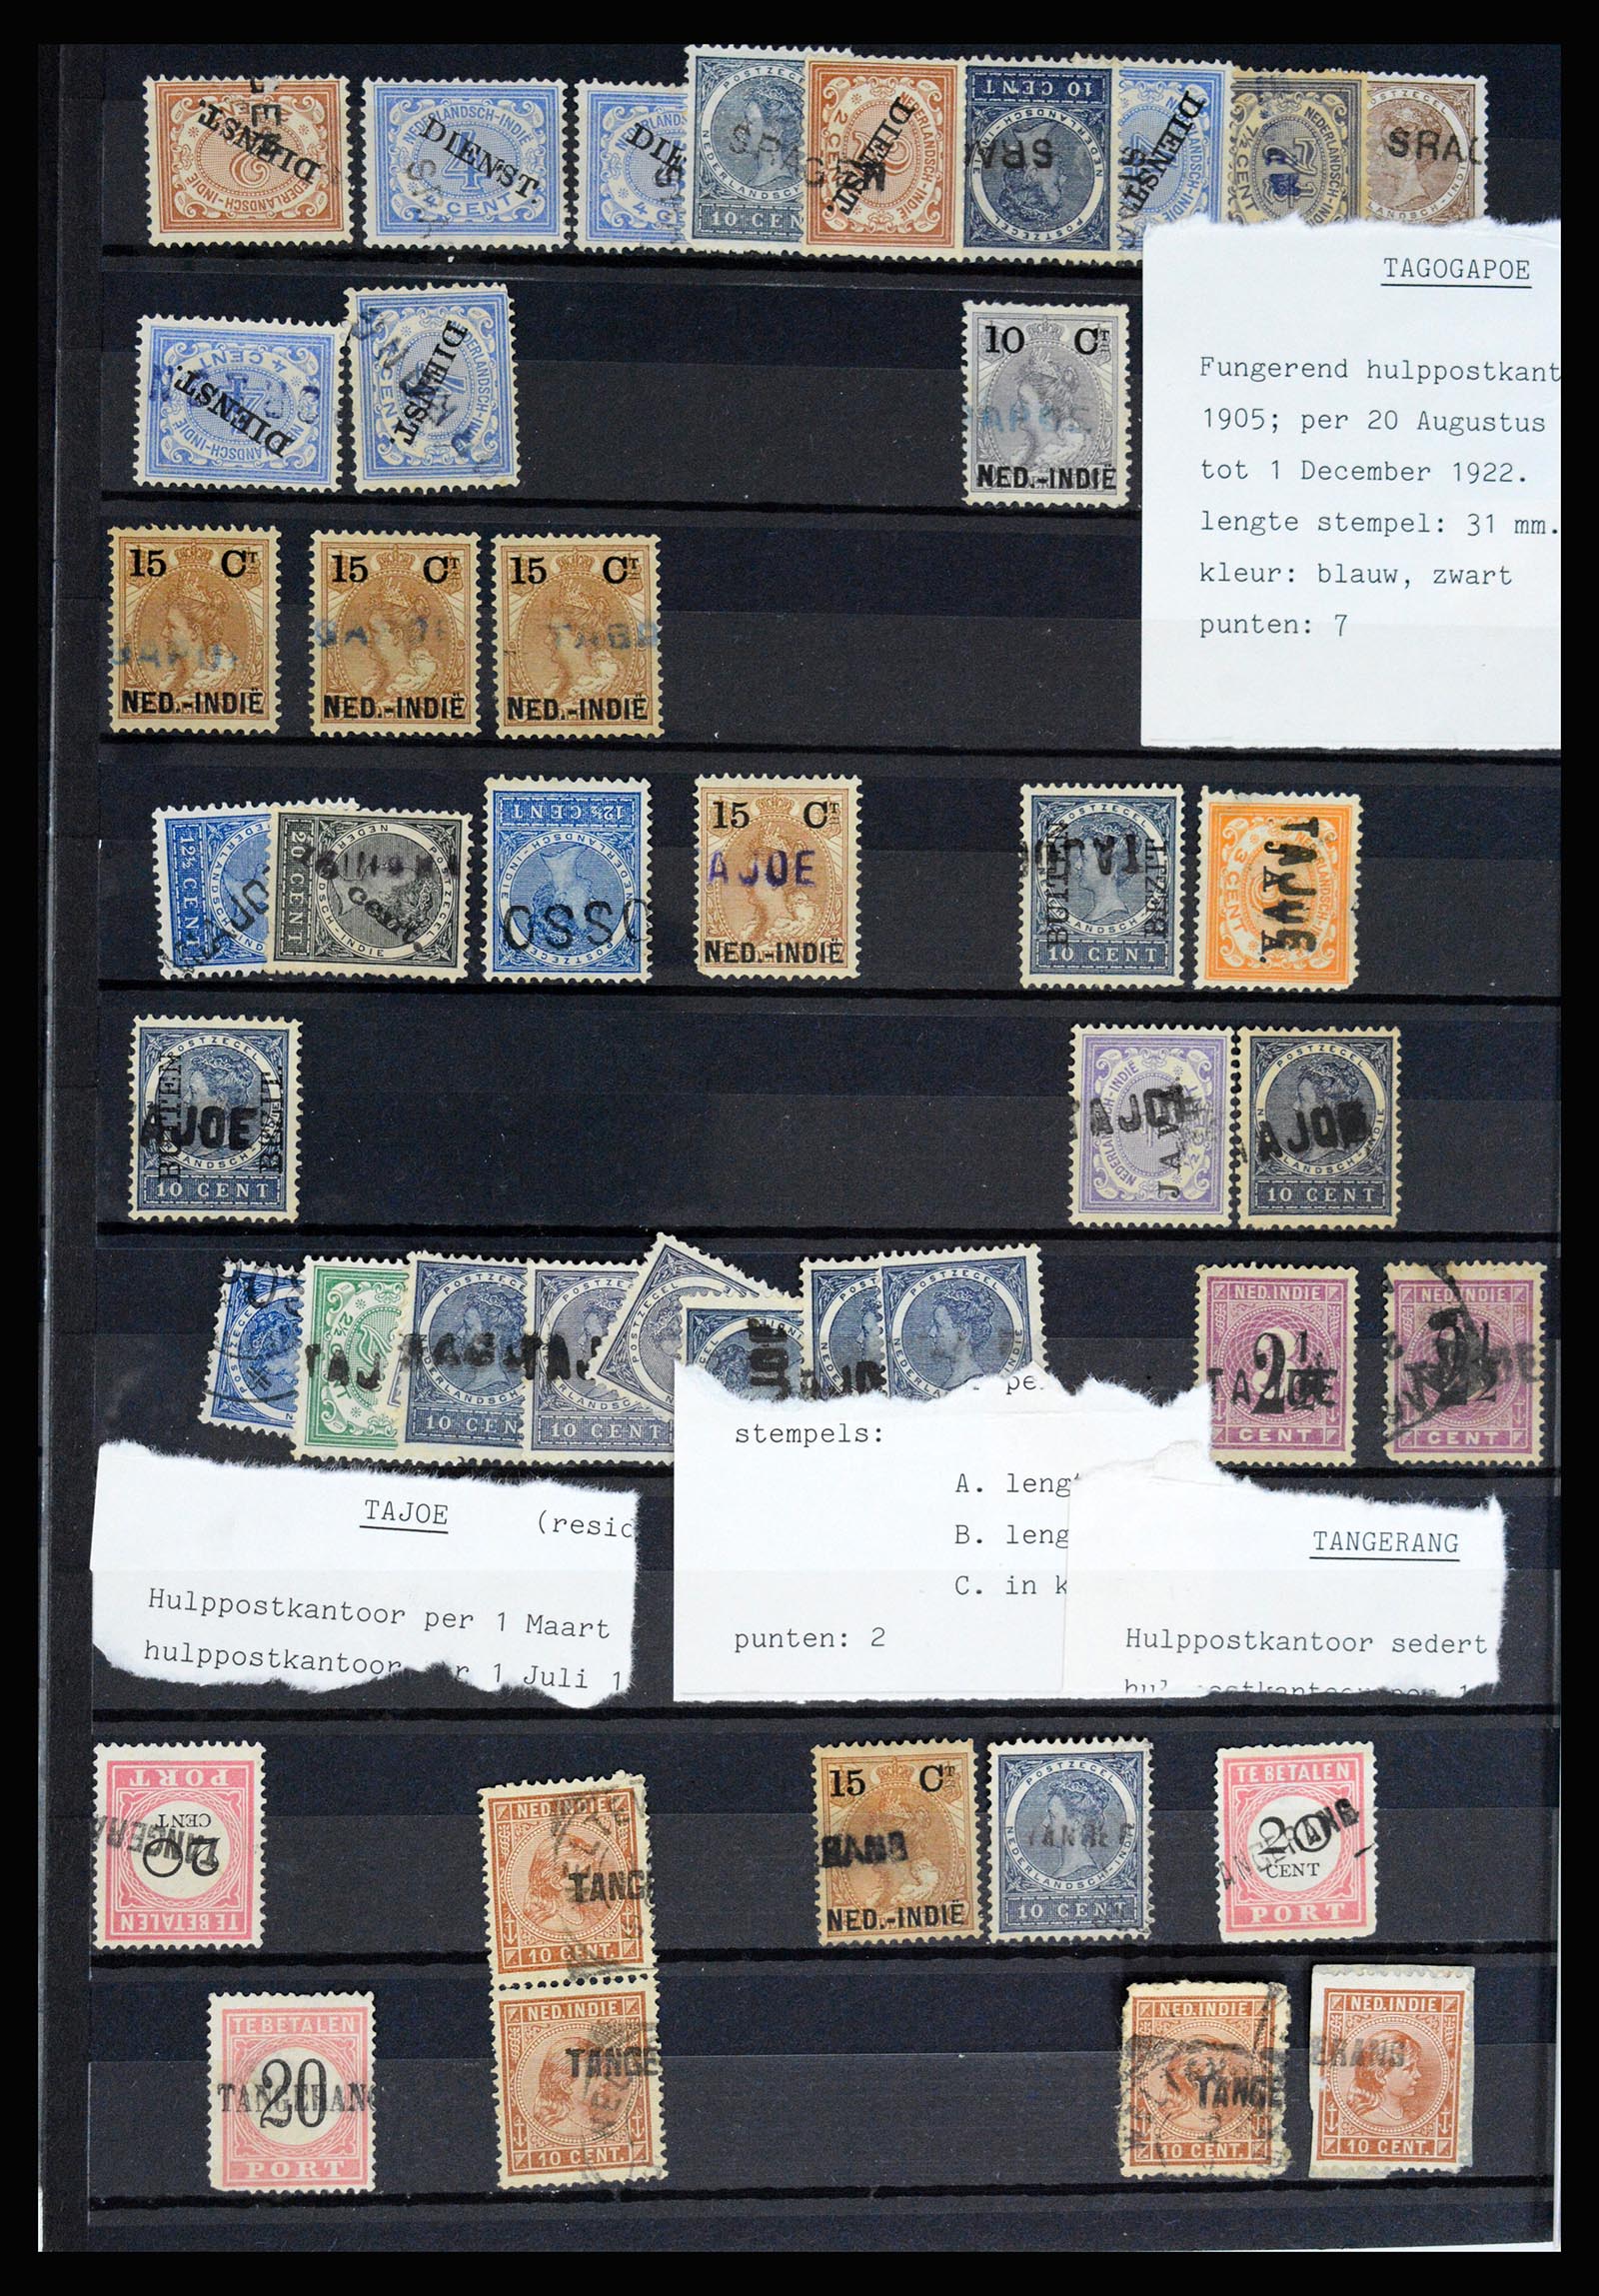 36512 068 - Stamp collection 36512 Nederlands Indië stempels 1872-1930.